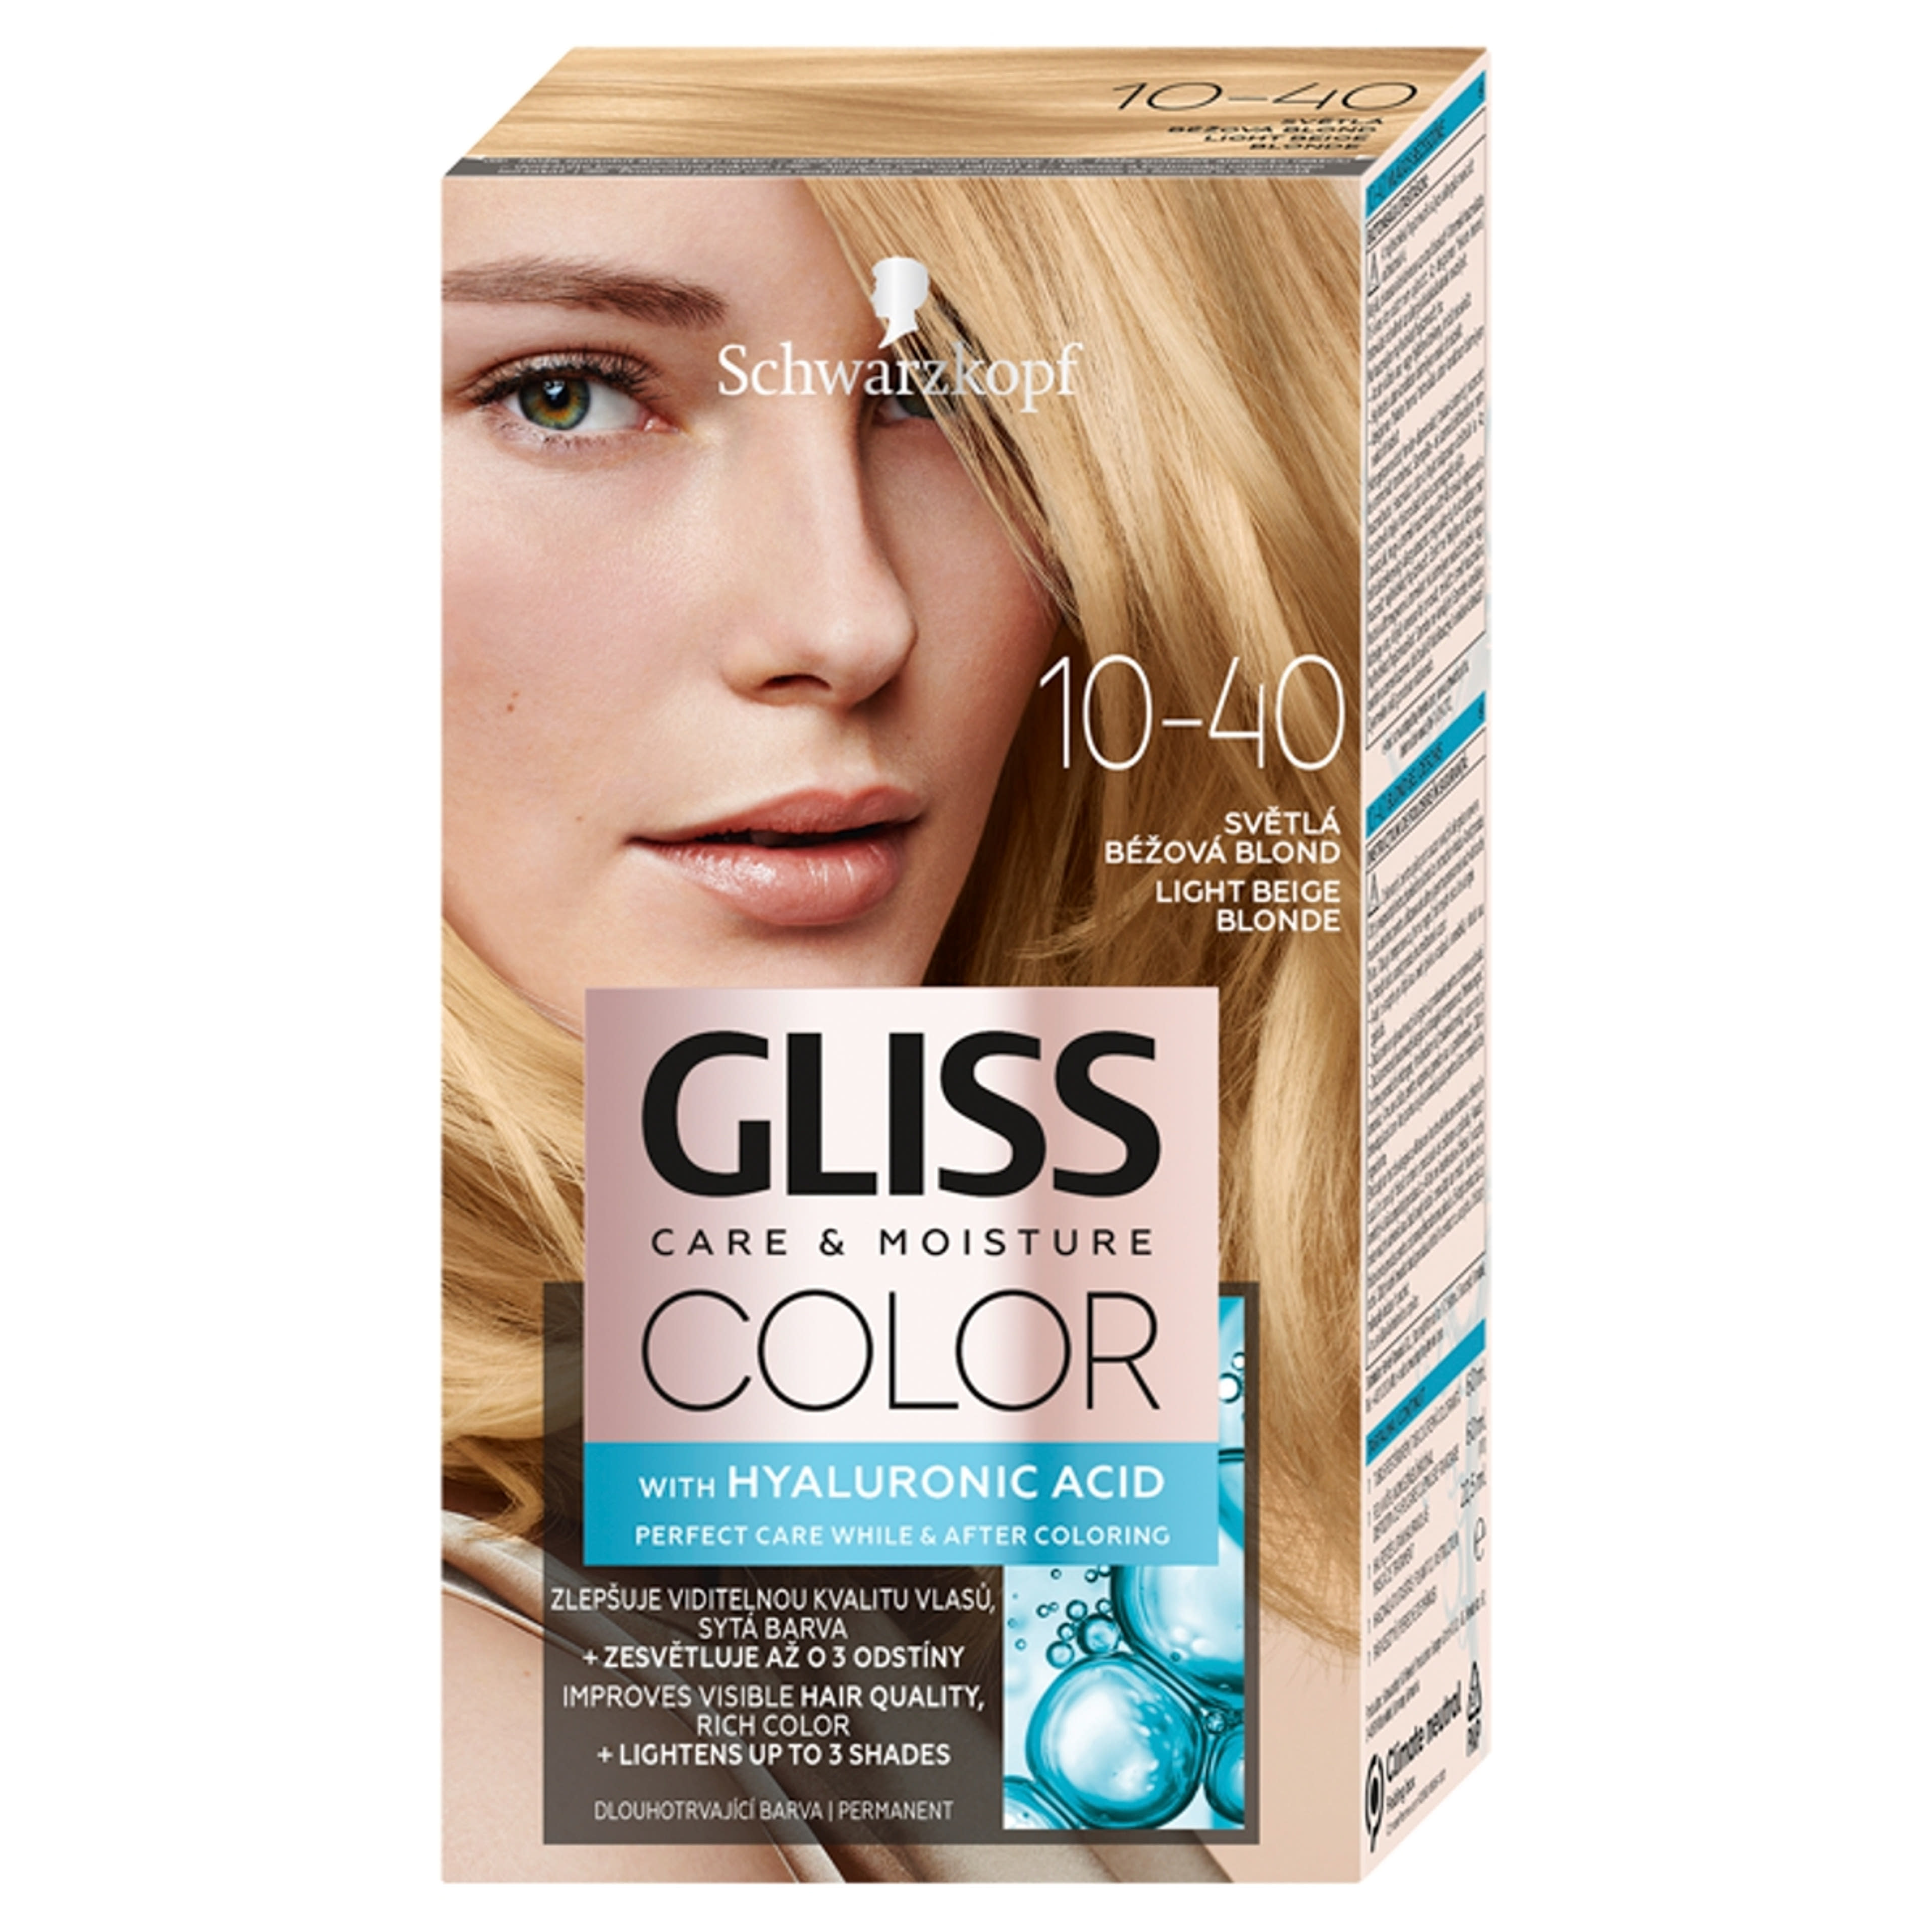 Gliss Color hajfesték, 10-40 világos bézsszőke - 1 db-1